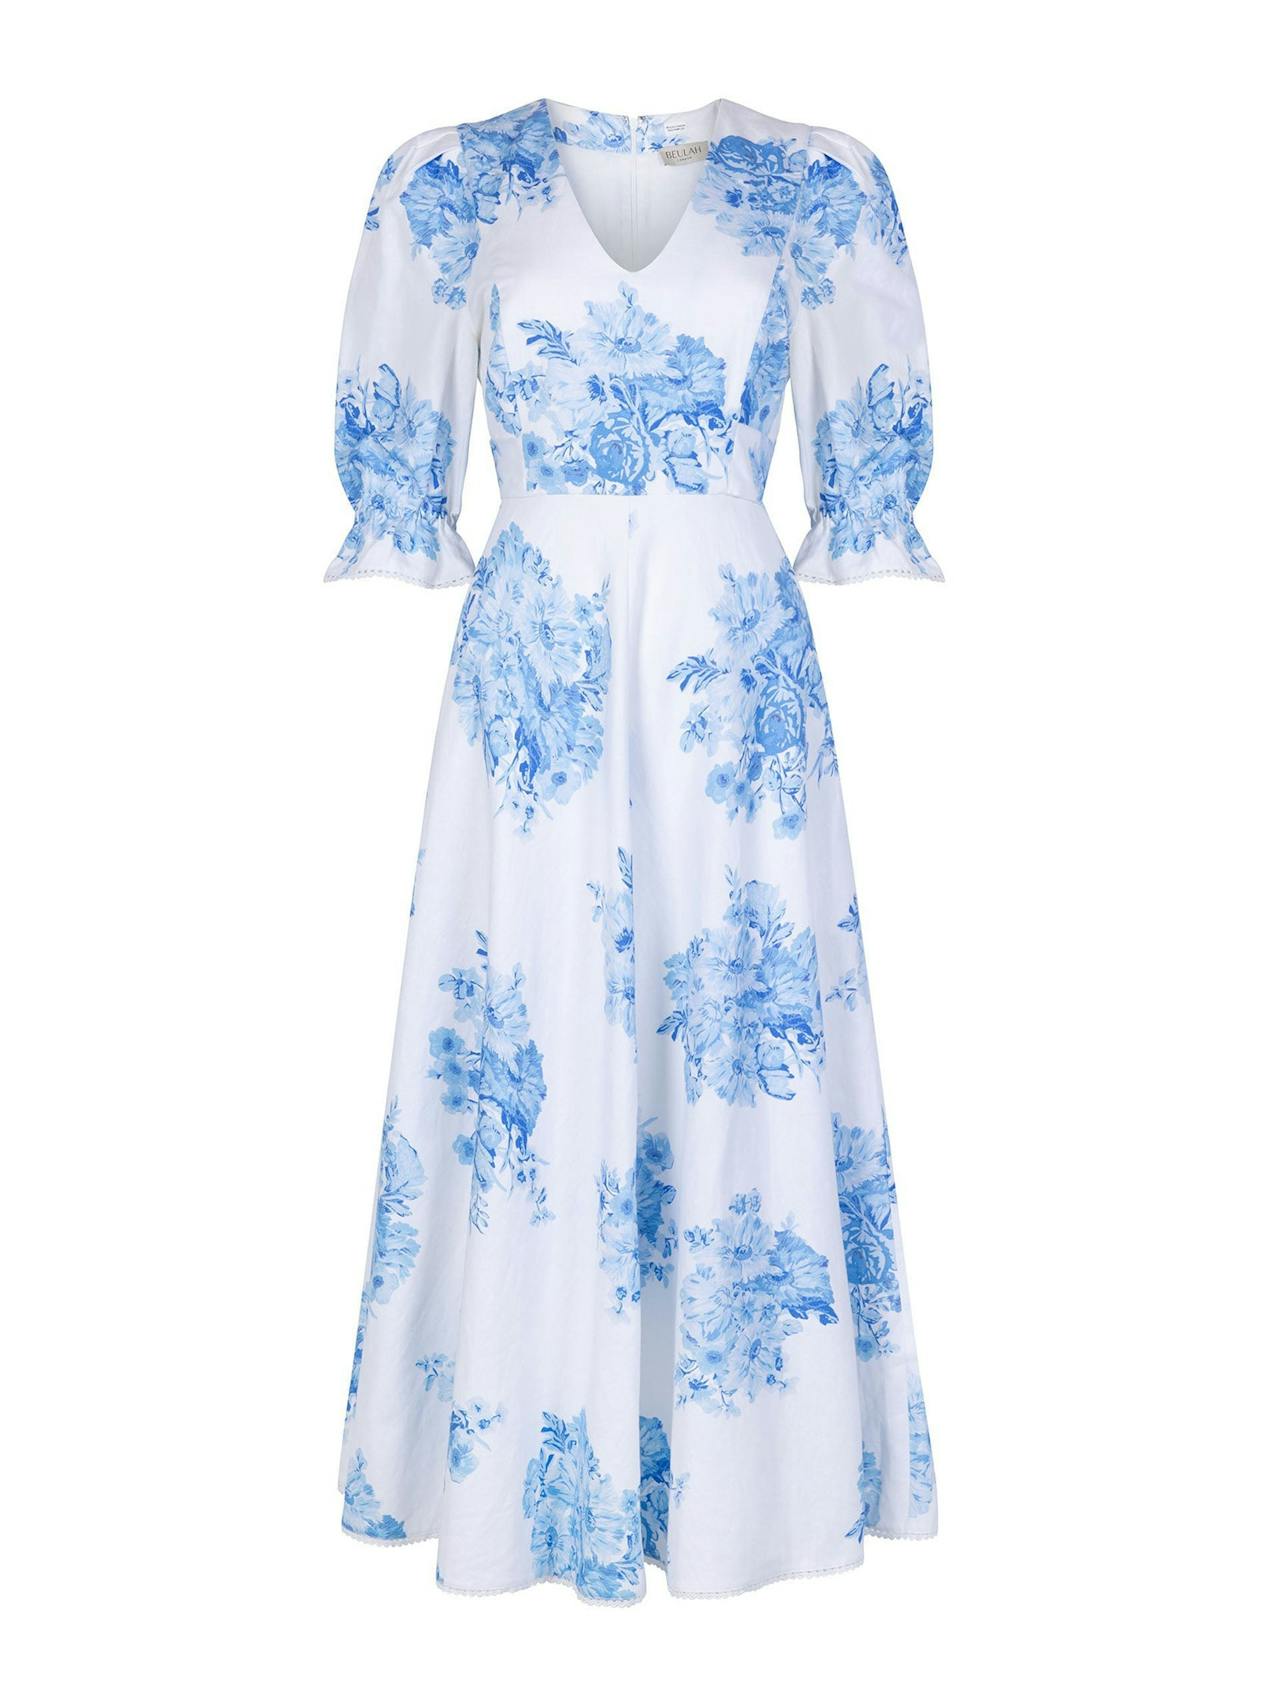 Flora blue garden floral dress